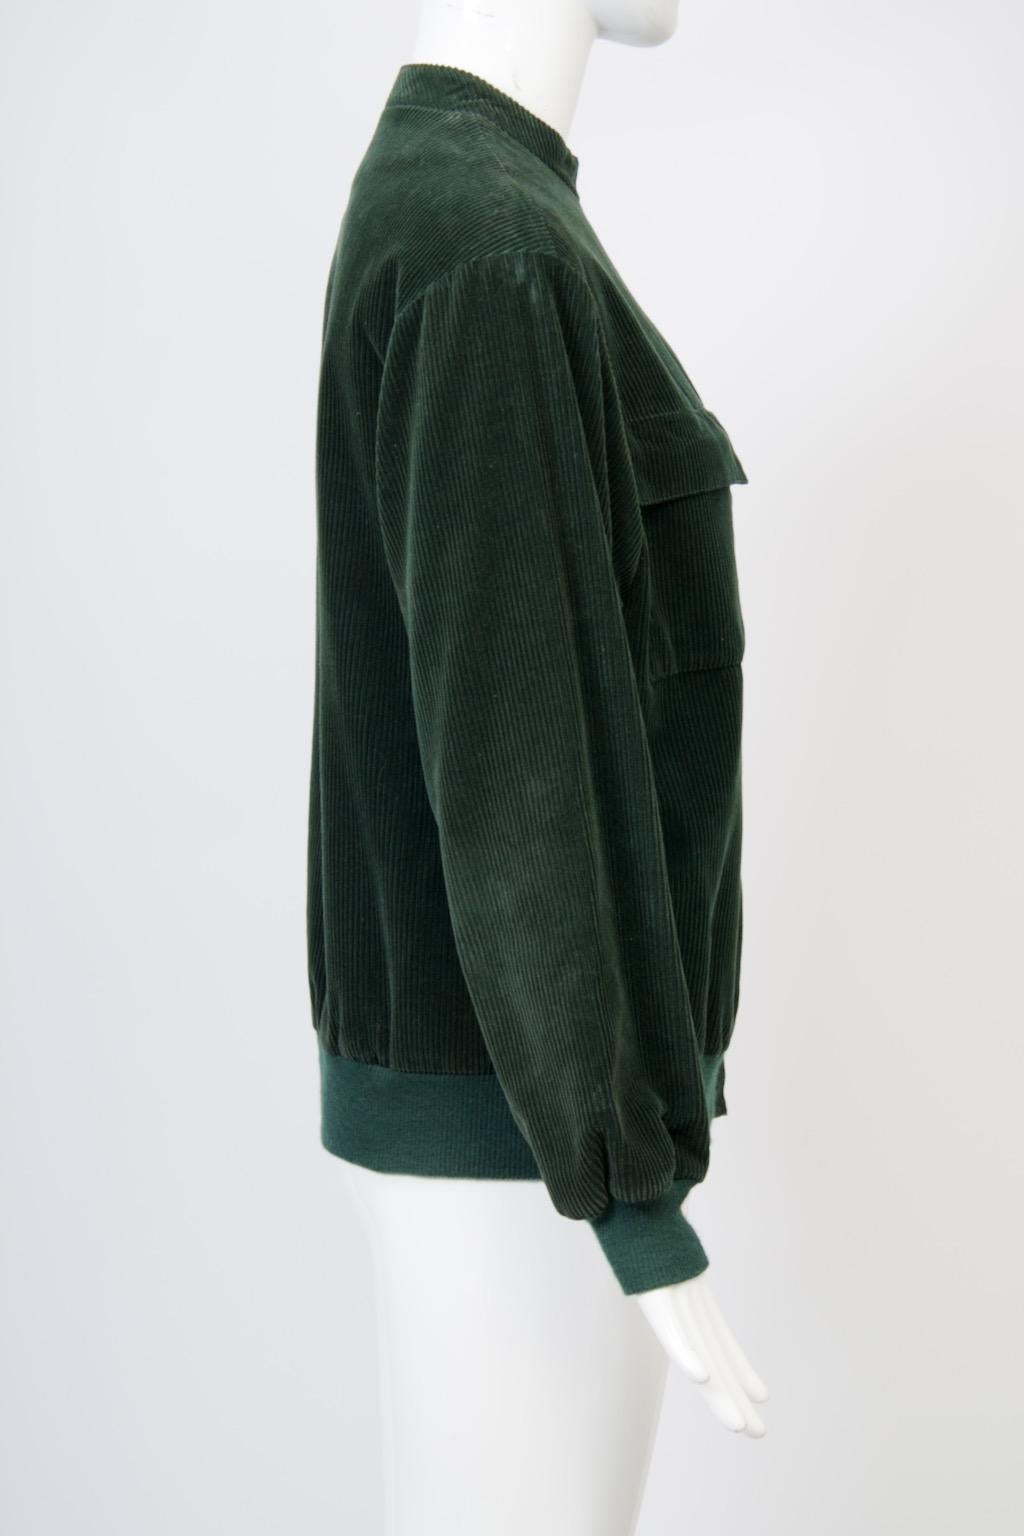 Franck Olivier Green Corduroy Jacket For Sale 2